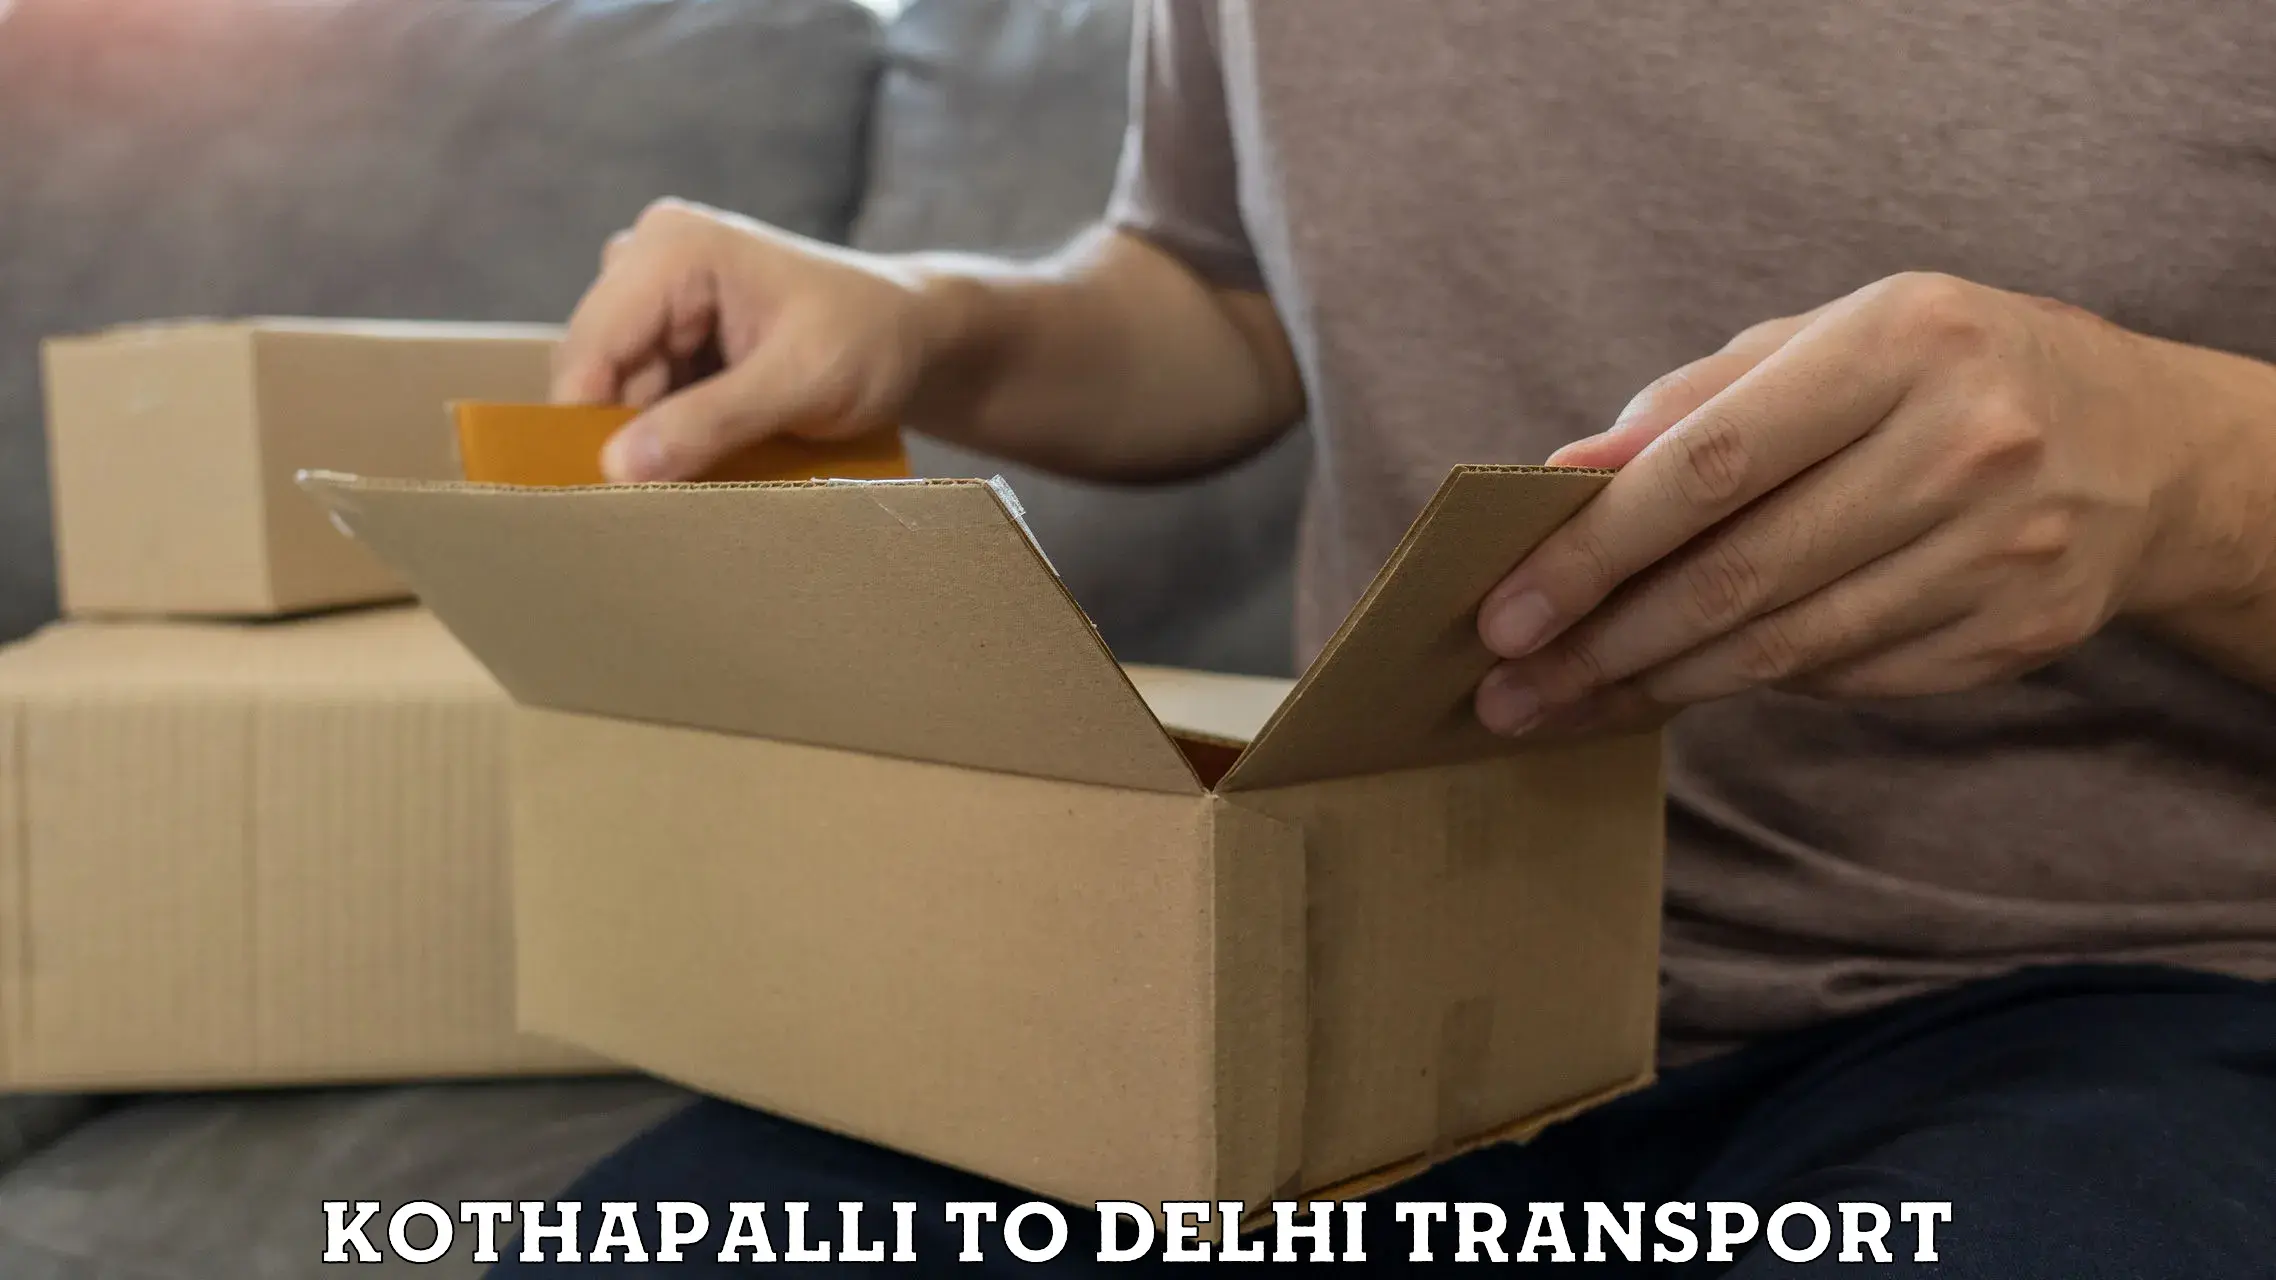 Lorry transport service Kothapalli to Jamia Millia Islamia New Delhi